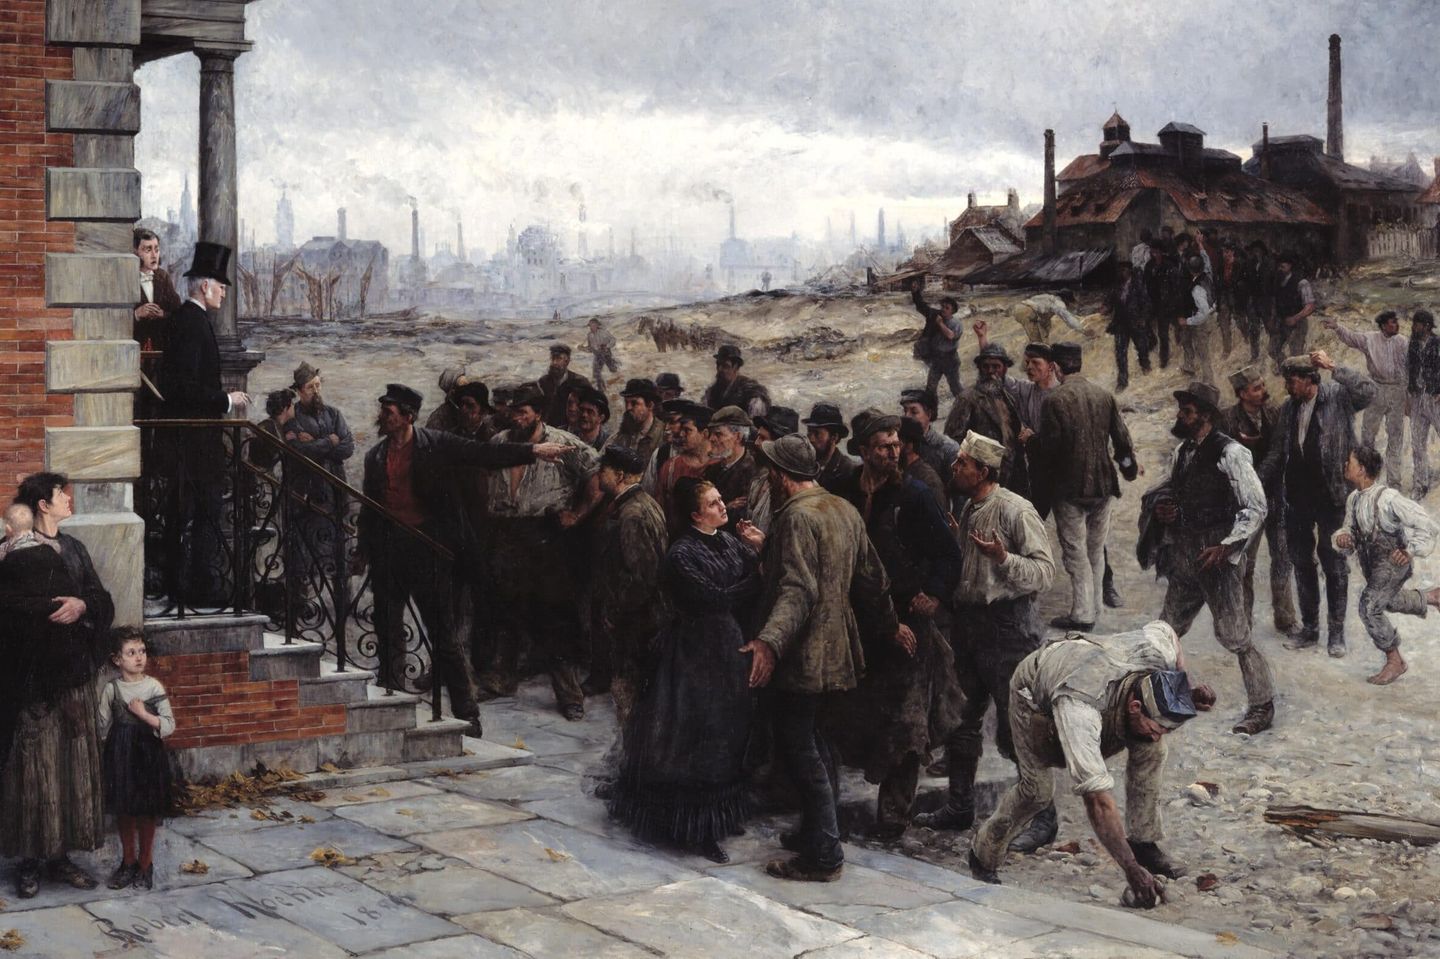 Das Gemälde „Der Streik“ des amerikanisch-deutschen Künstlers Robert Koehler zeigt die Konfrontation eines Unternehmers mit einer Gruppe im Ausstand befindlicher Arbeiter